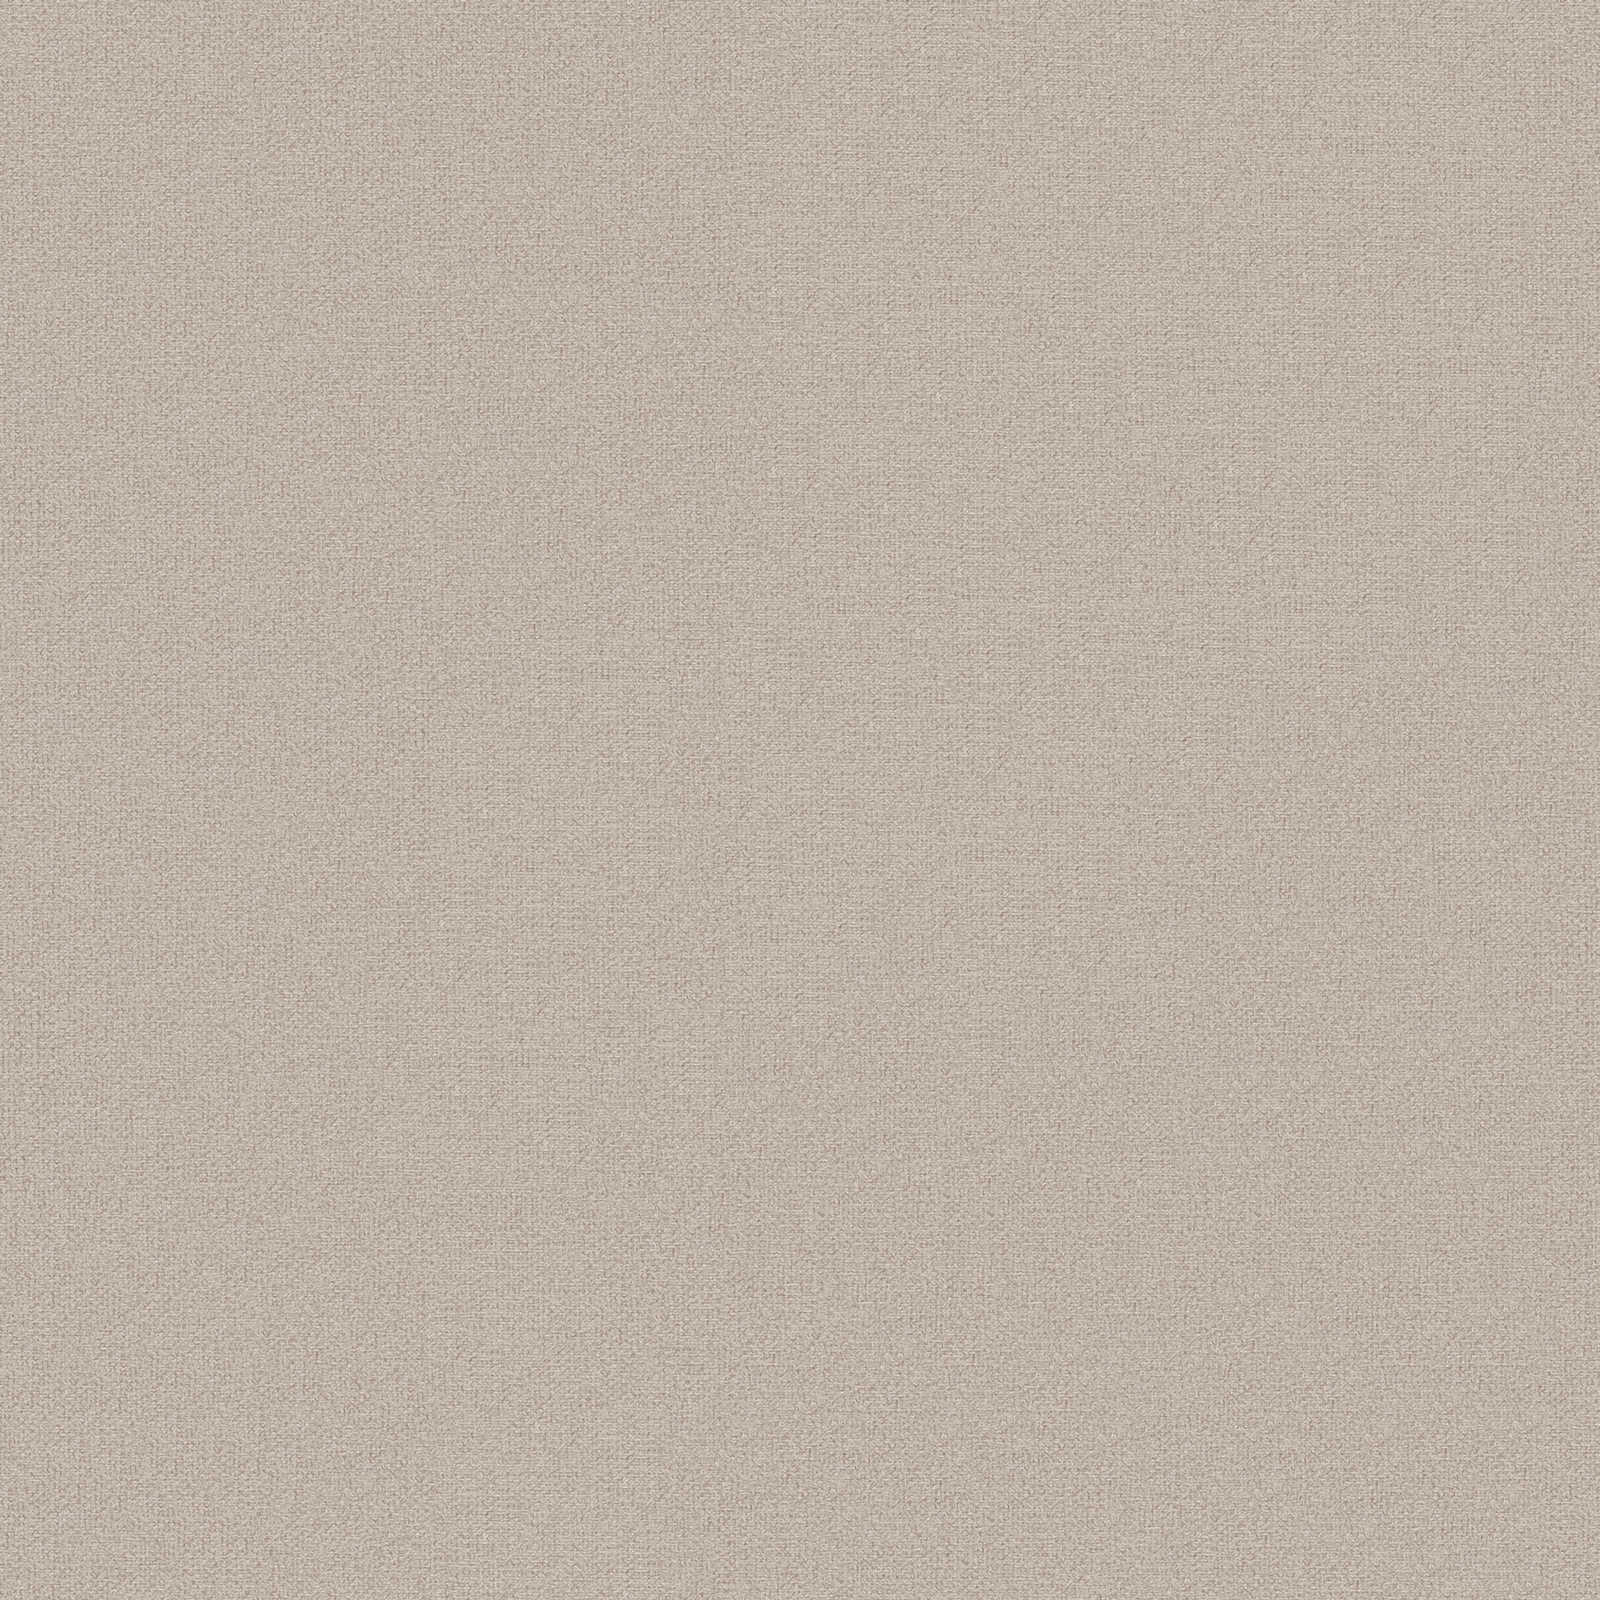 Papier peint uni aspect lin sans PVC - marron, beige
